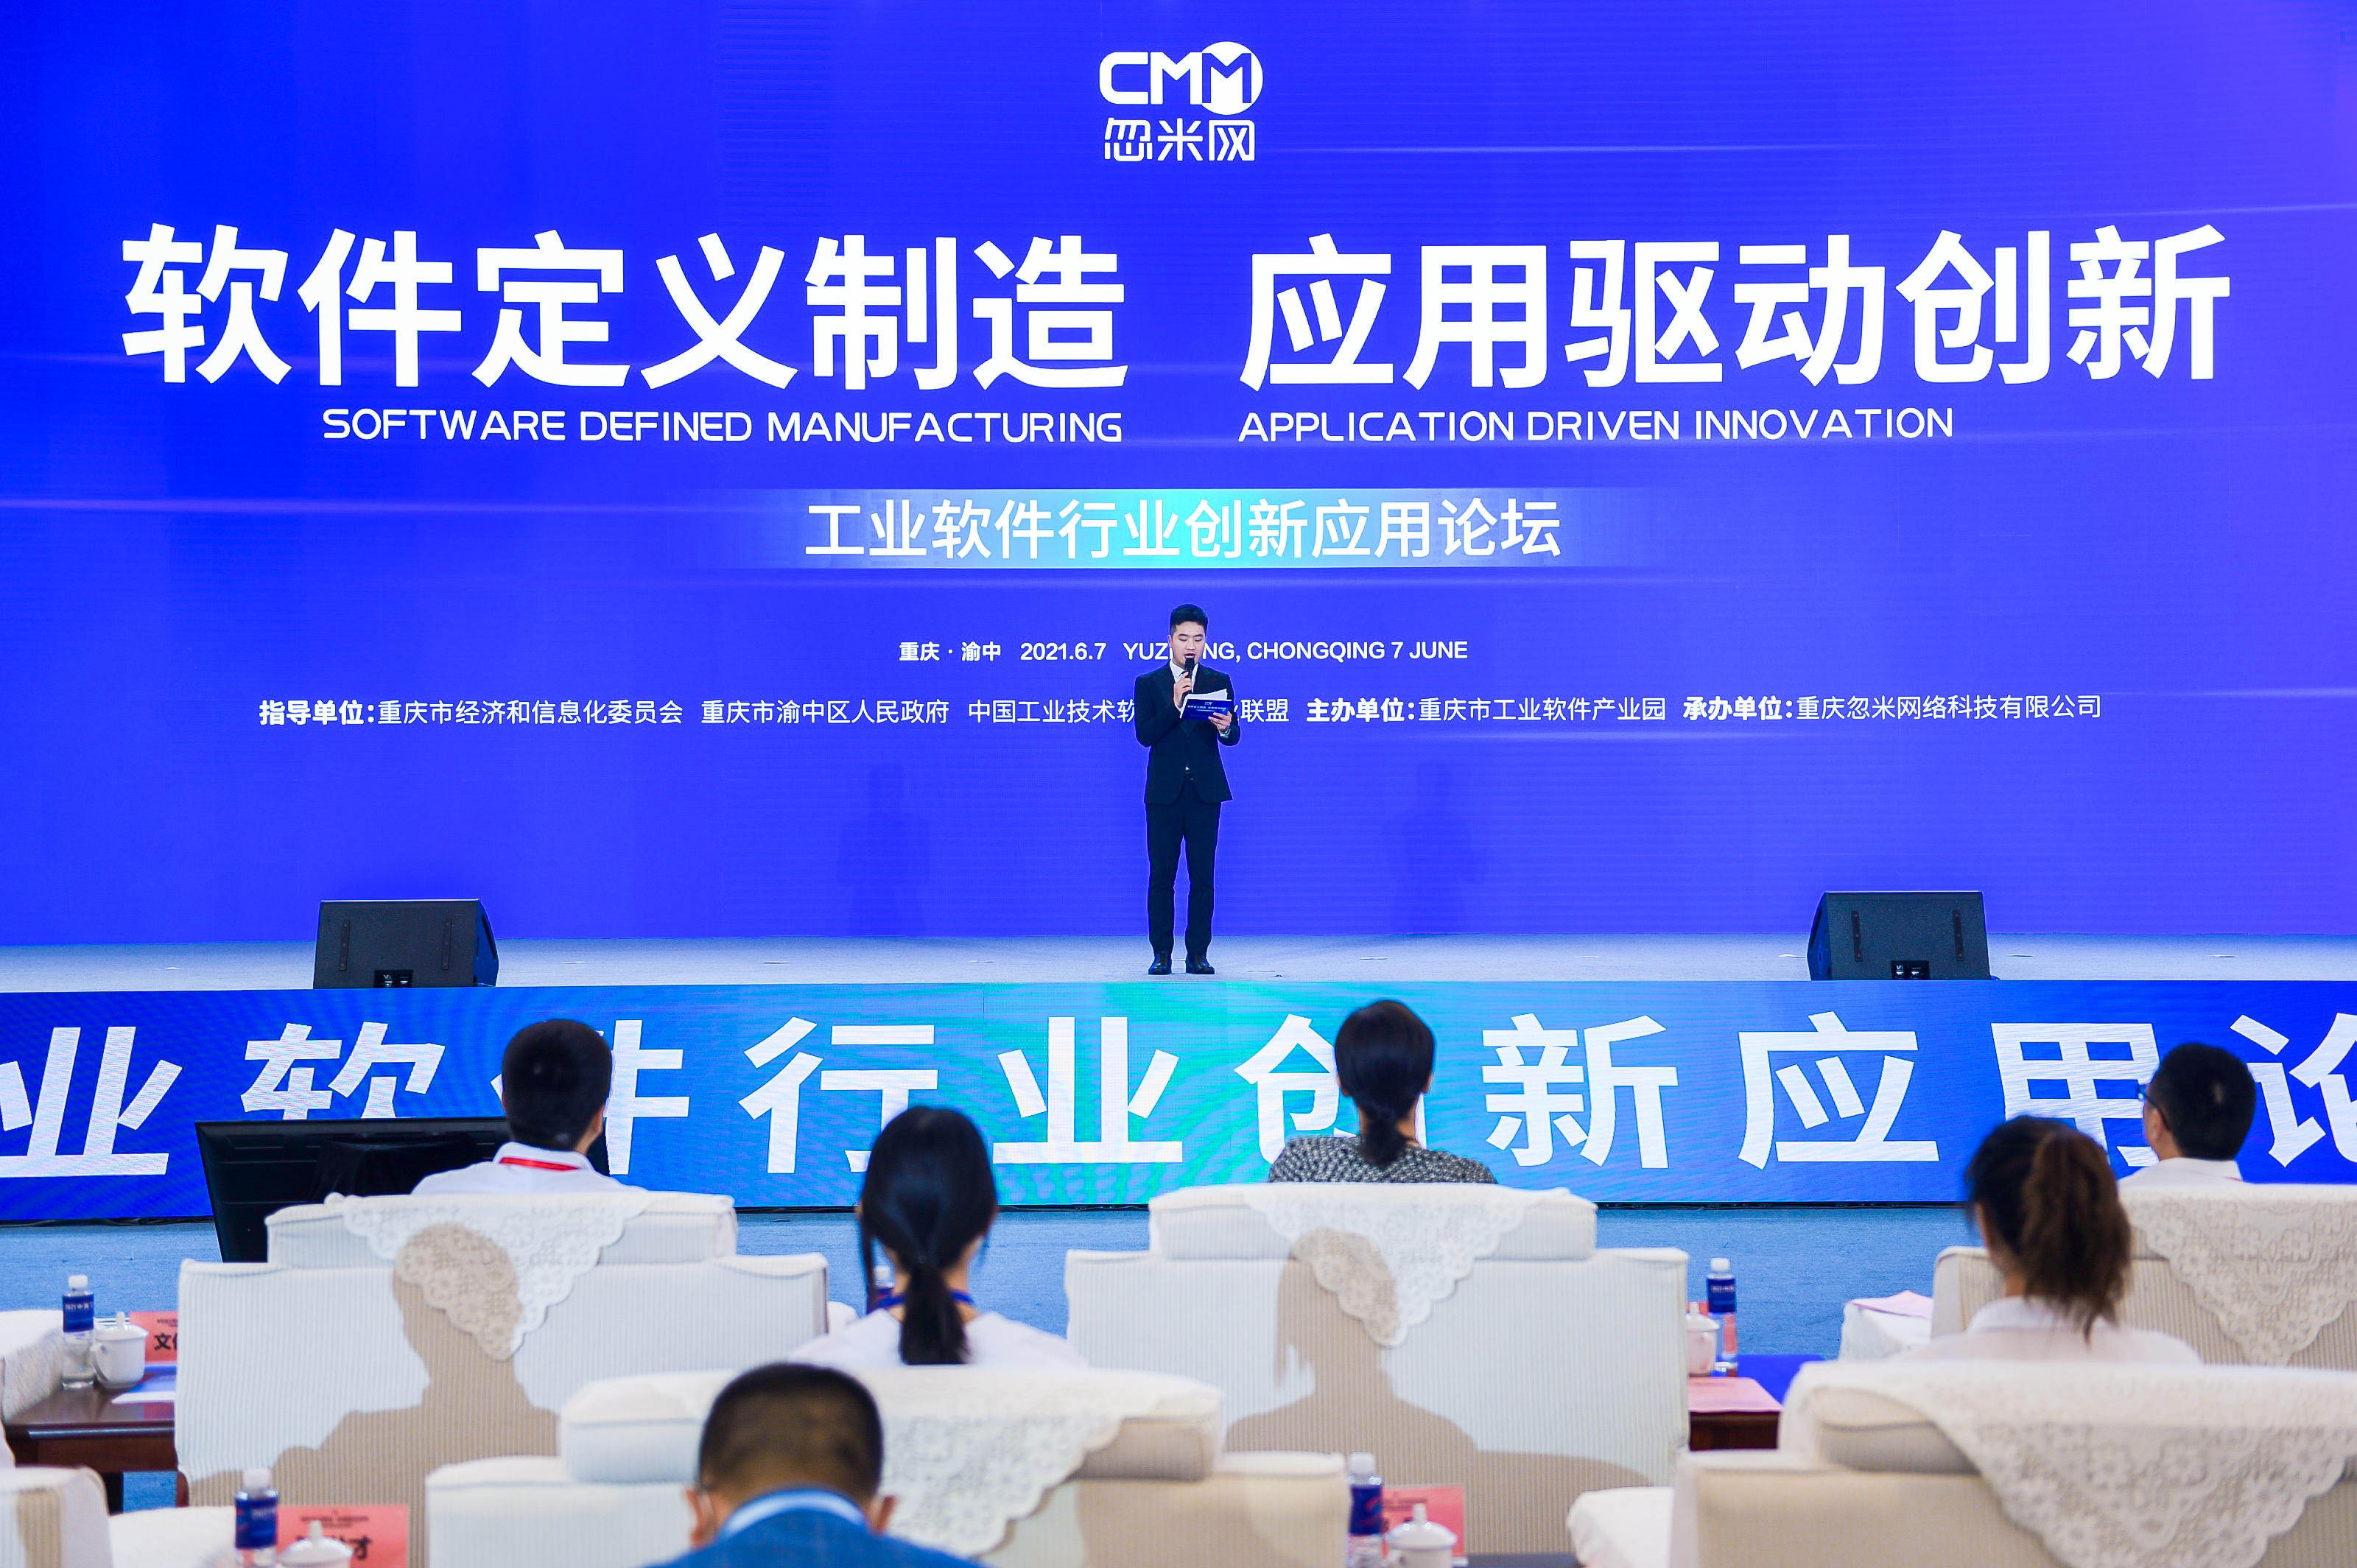 2021中国工业软件大会“工业软件行业创新应用论坛”举行